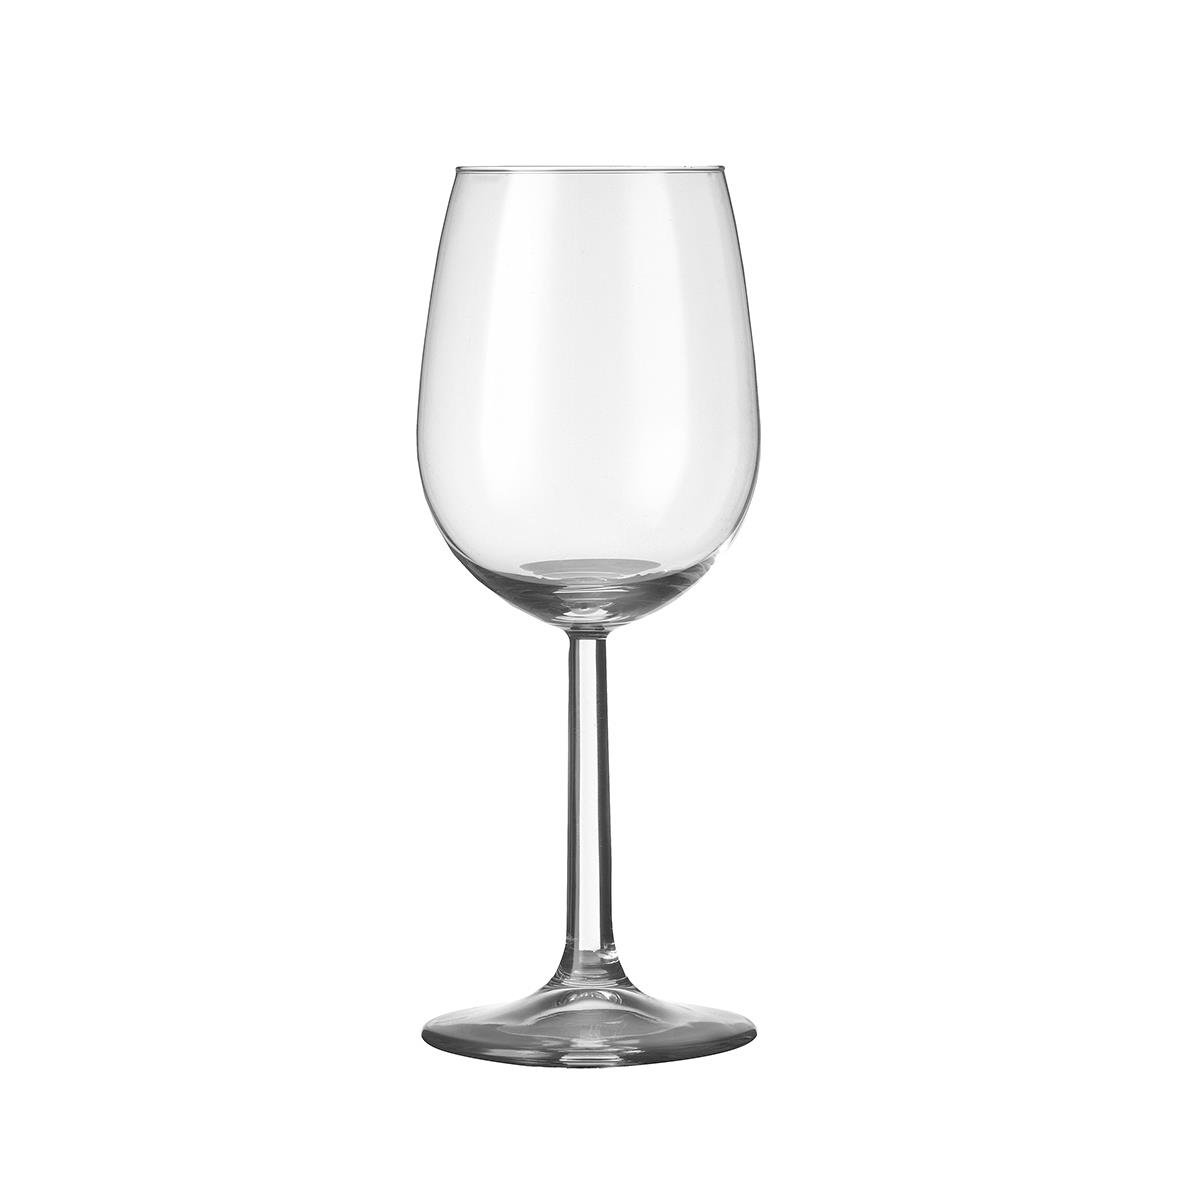 Bouquet Weinglas mit einer Kapazität von 29 cl gedruckt oder graviert